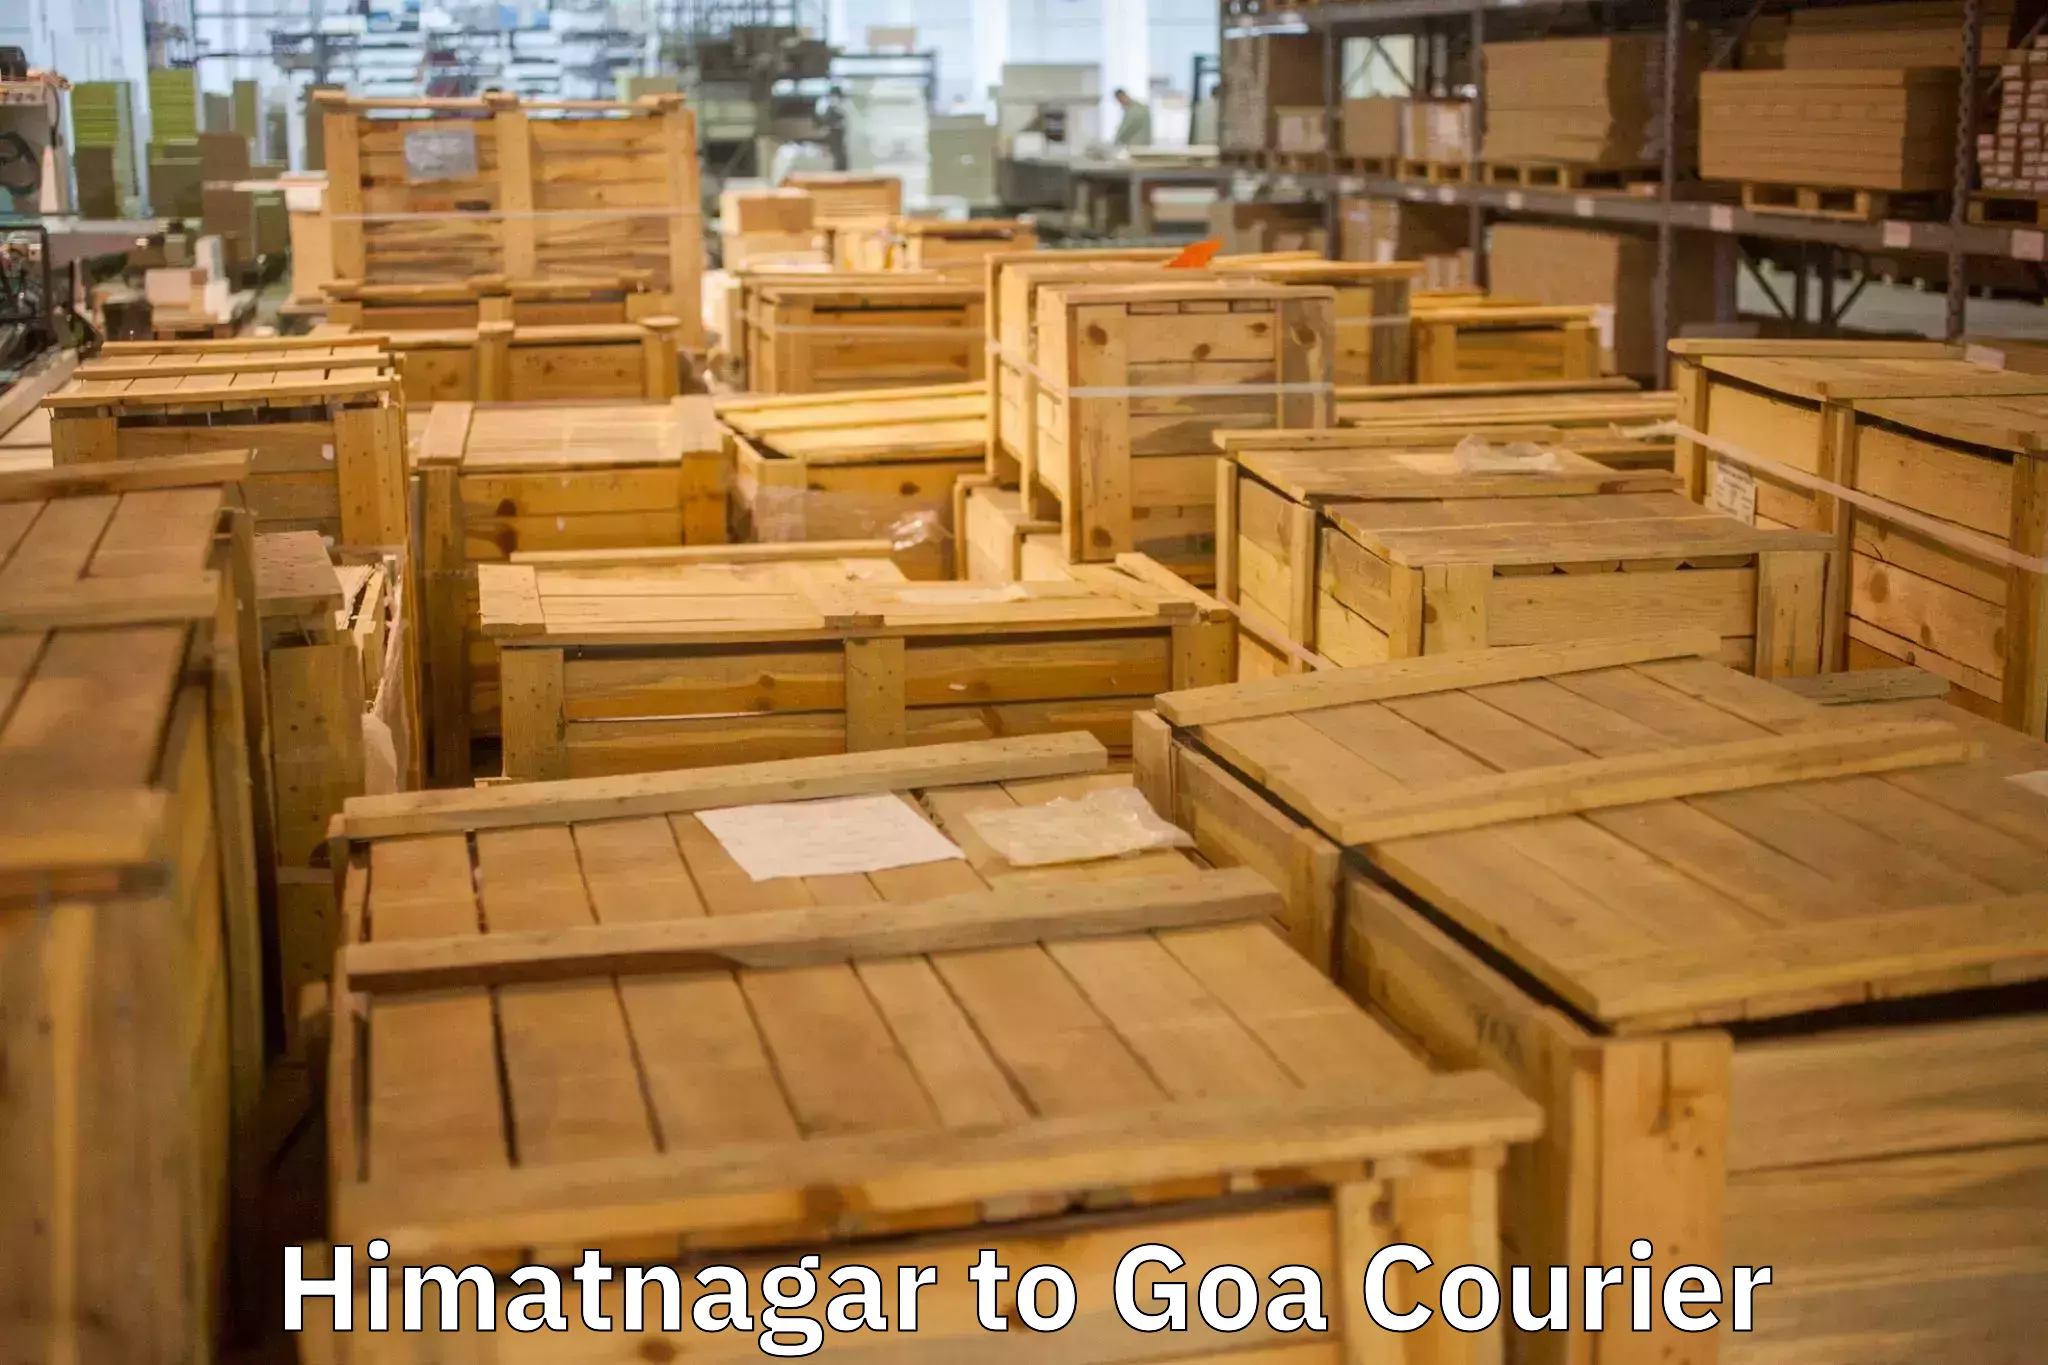 Professional moving company Himatnagar to Canacona